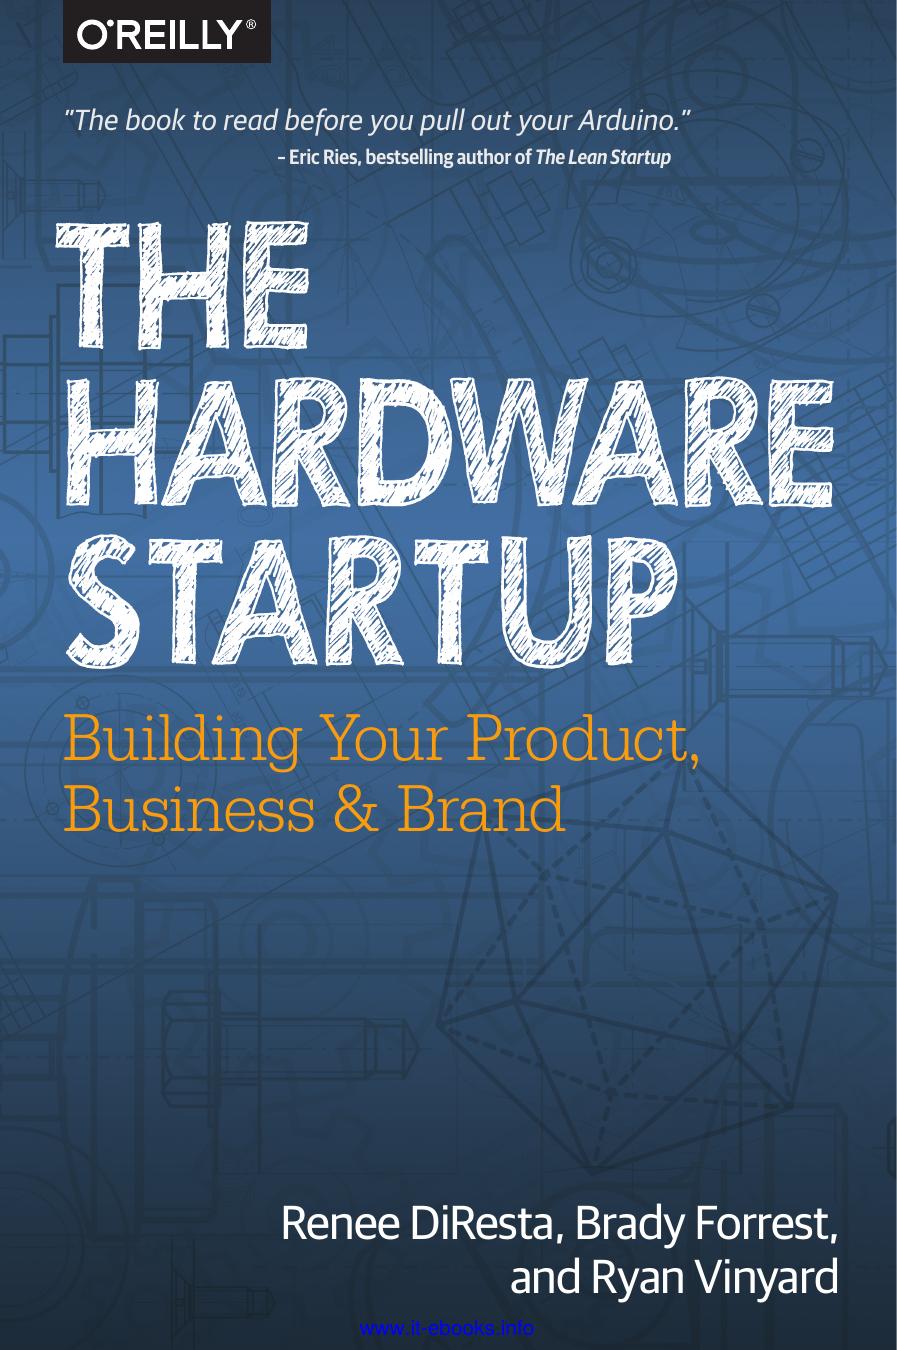 The Hardware Startup by Renee DiResta Brady Forrest & Ryan Vinyard